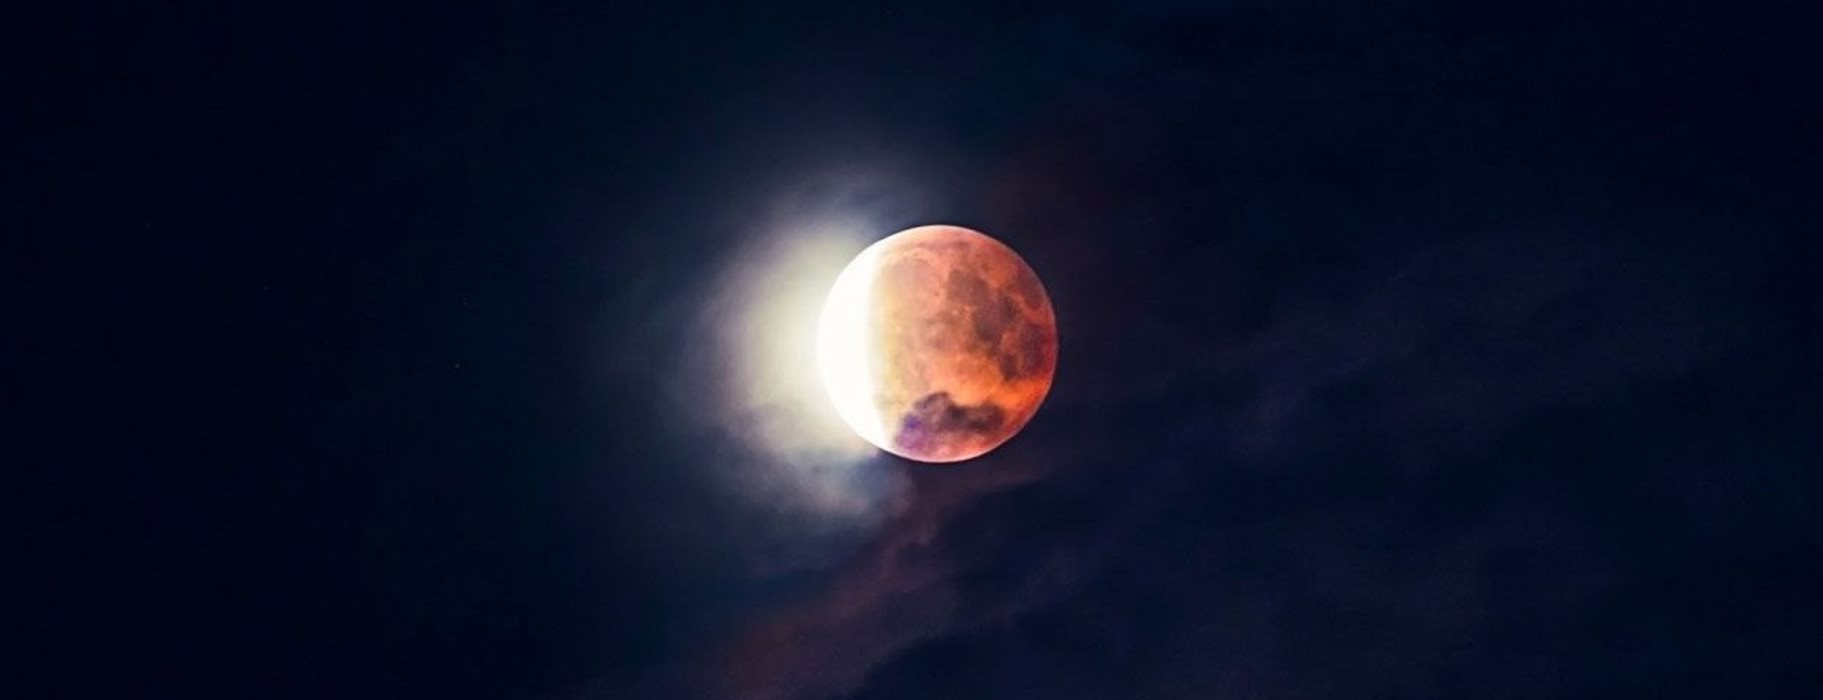 Μην χάσετε την ευκαιρία: Απόψε το εντυπωσιακό διπλό φαινόμενο με Πανσέληνο και έκλειψη παρασκιάς Σελήνης